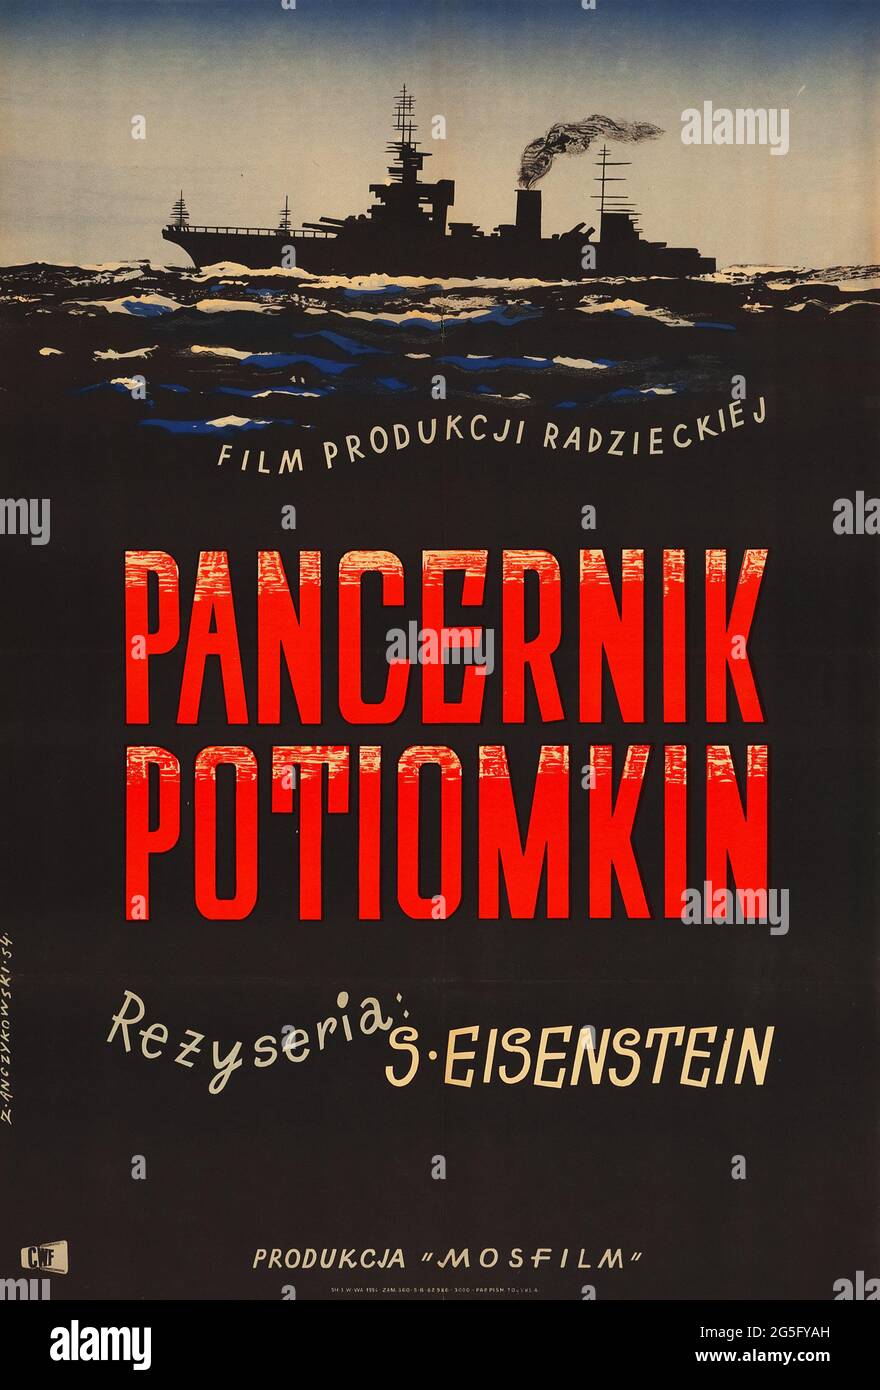 Battleship Potemkin. Polish. Russian director Sergei Eisenstein crafted his undisputed masterpiece. Movie poster. 1954. Stock Photo